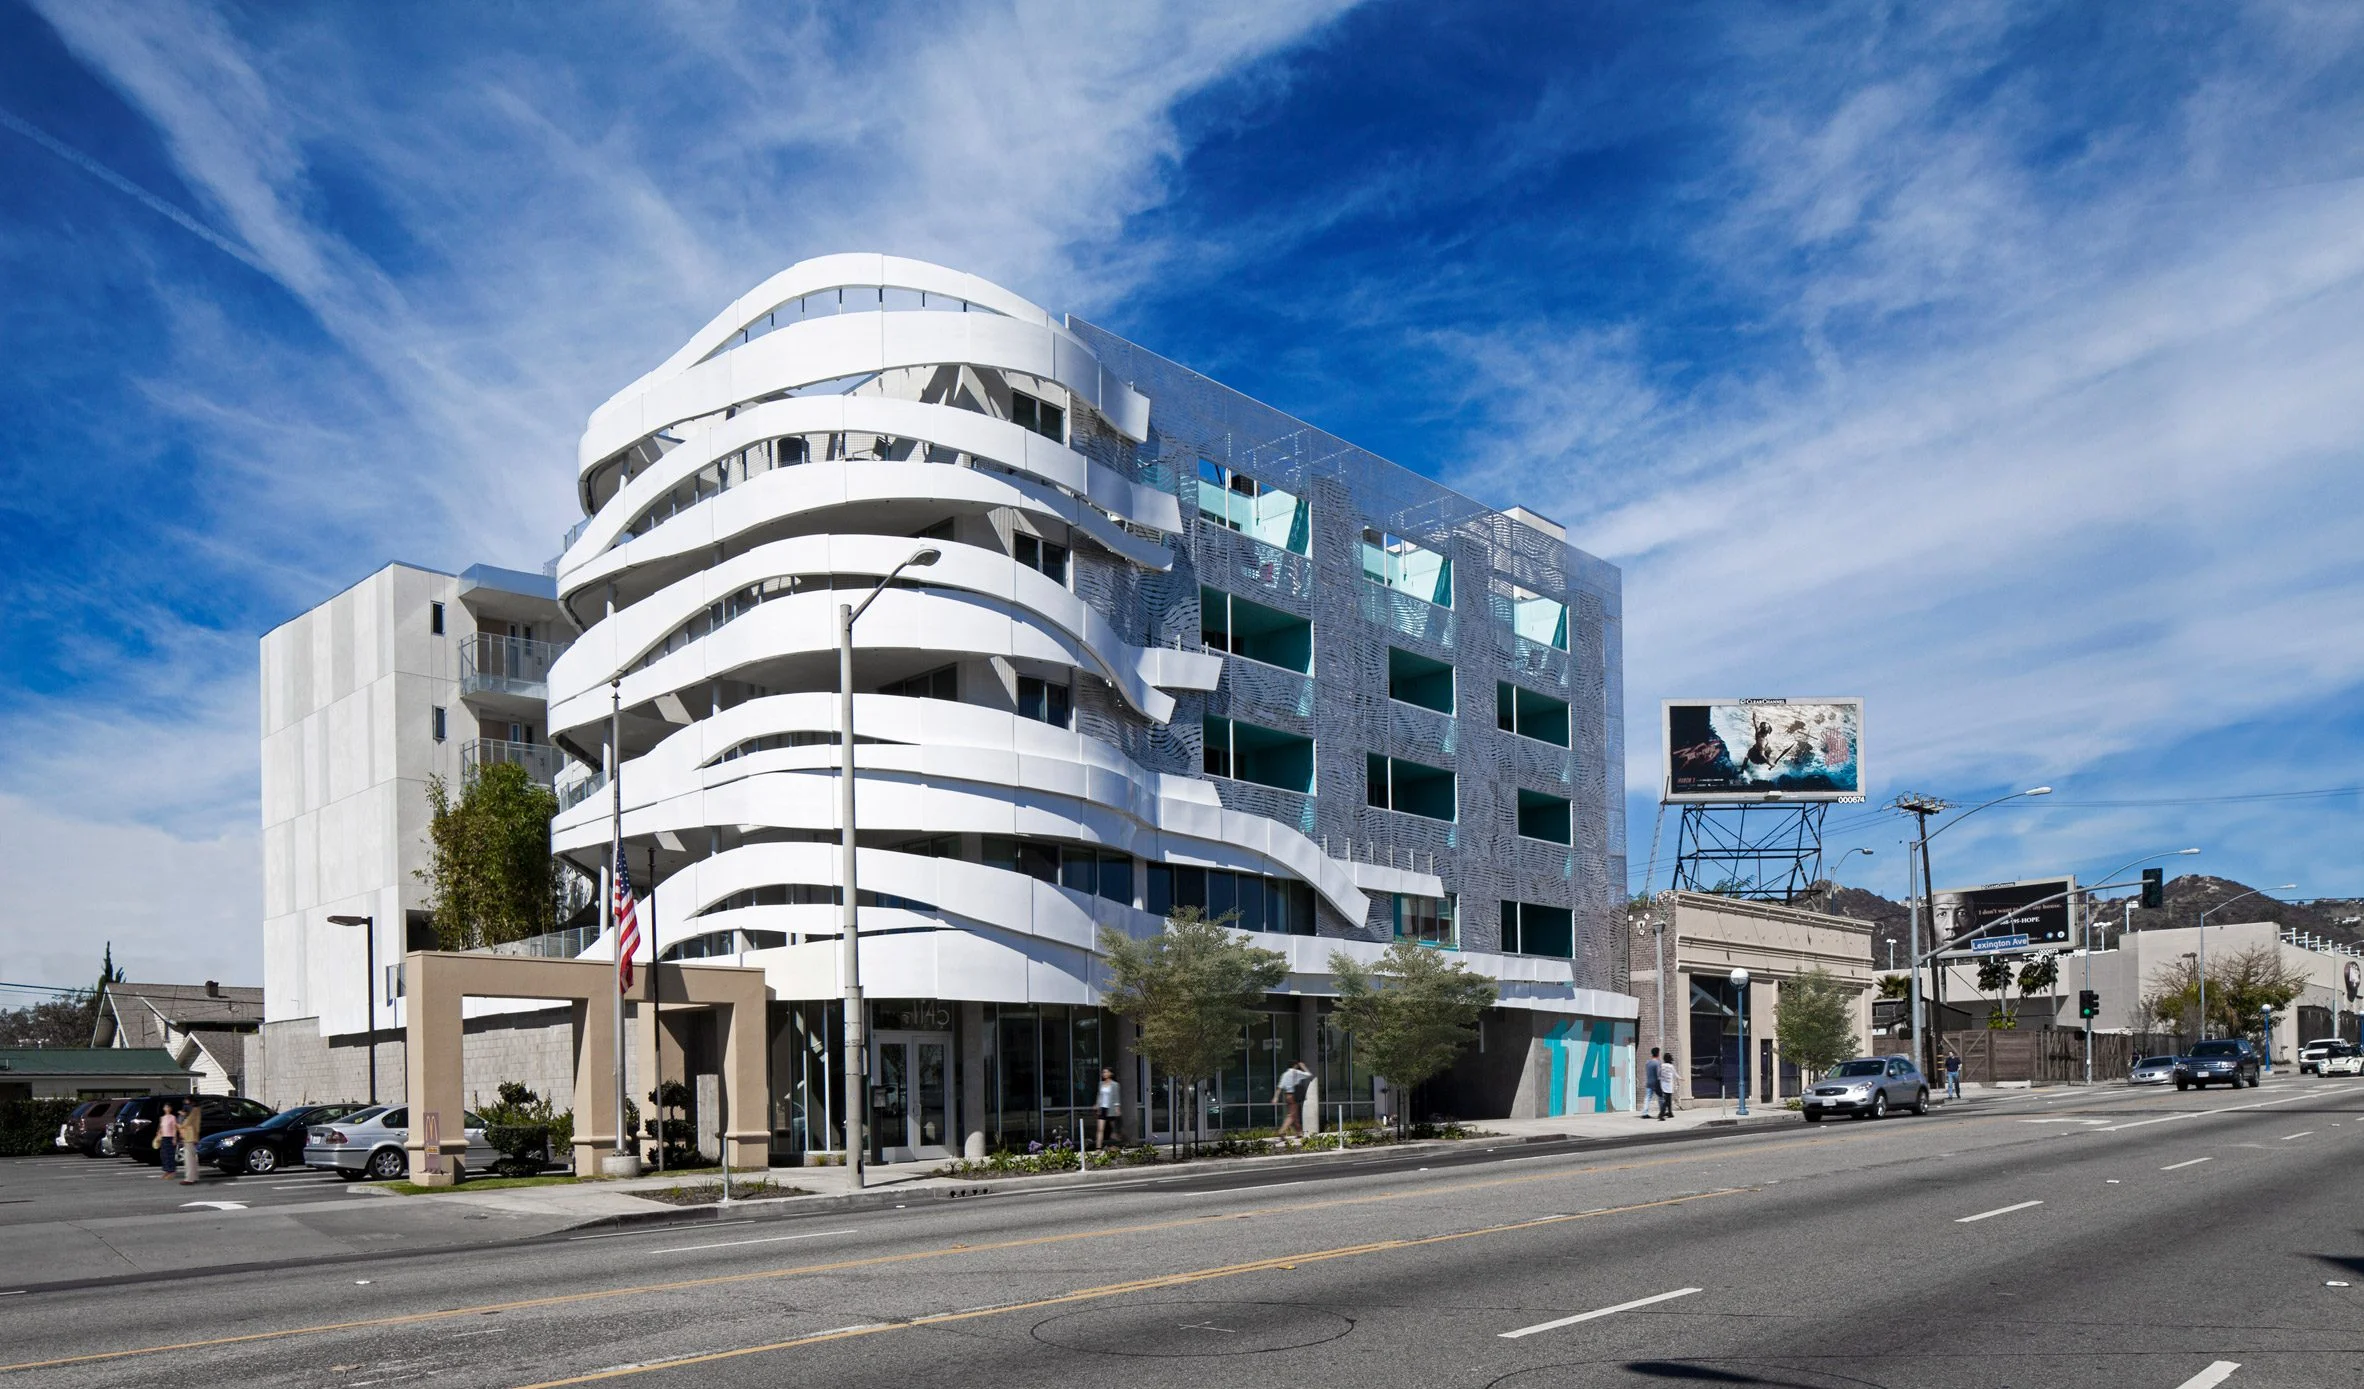 西好莱坞的拉布雷亚经济适用房是对装饰艺术的现代演绎|ART-Arrakis | 建筑室内设计的创新与灵感